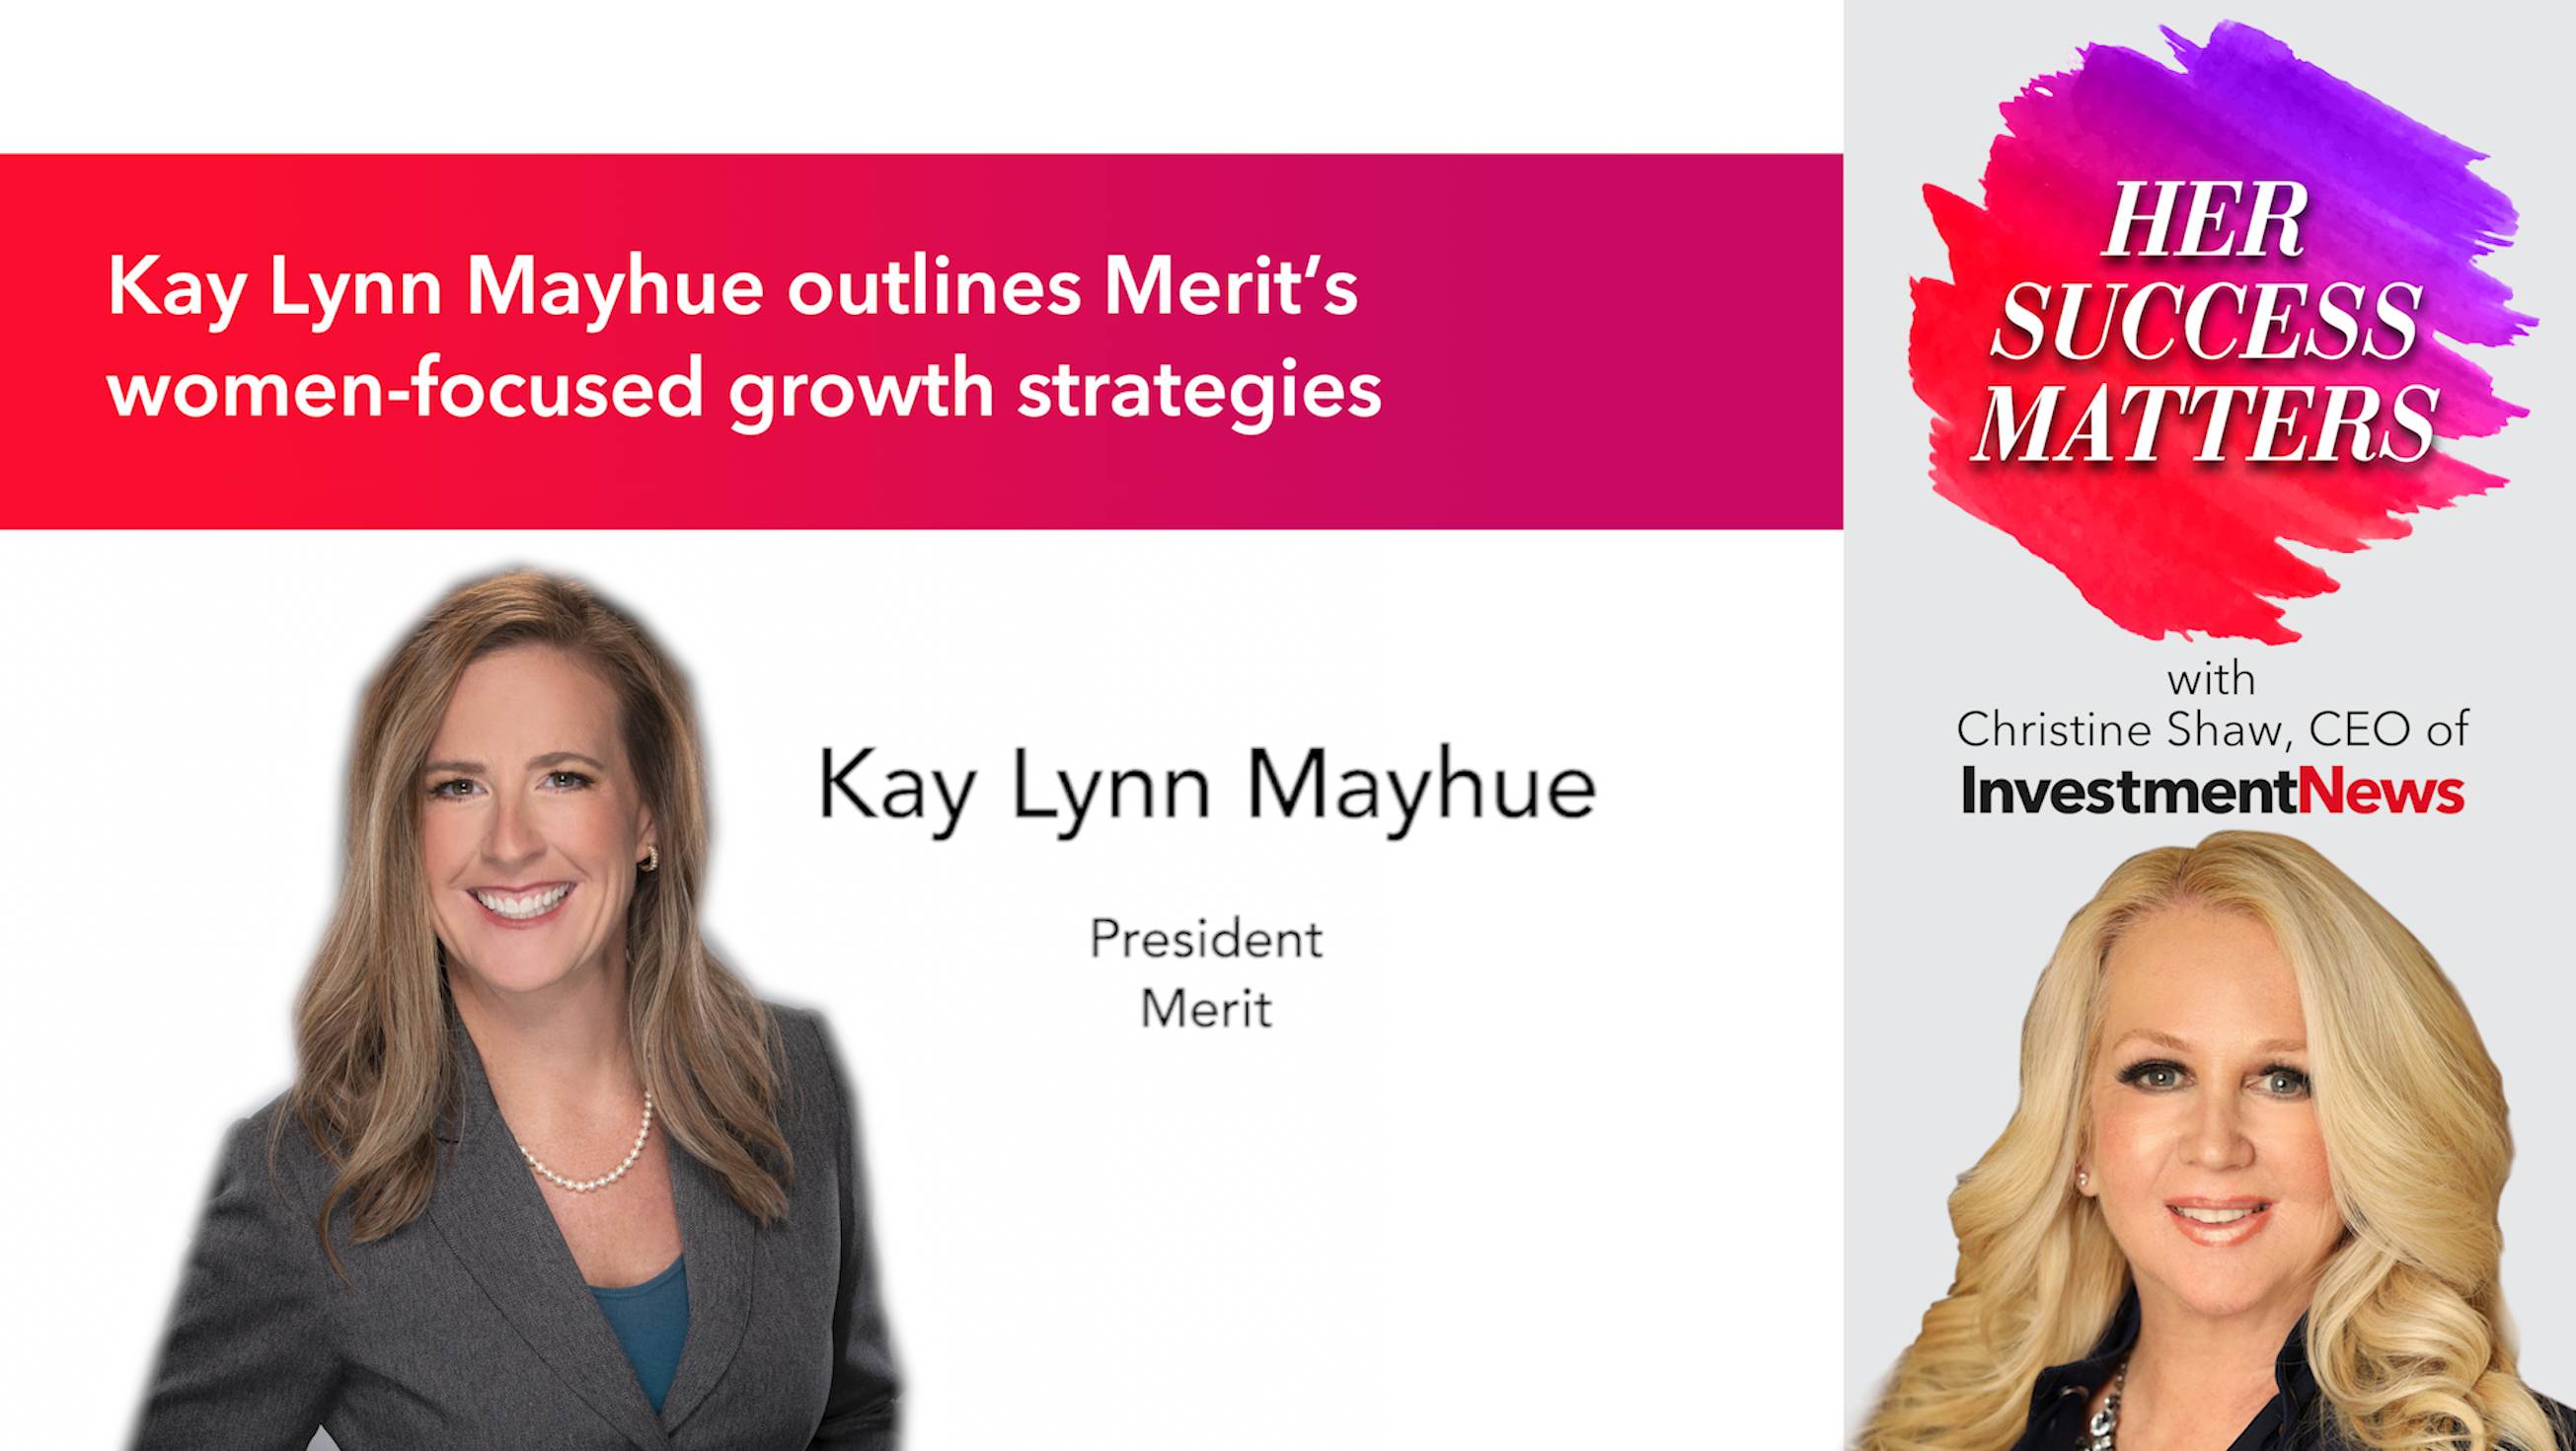 Kay Lynn Mayhue outlines Merit’s women-focused growth strategies